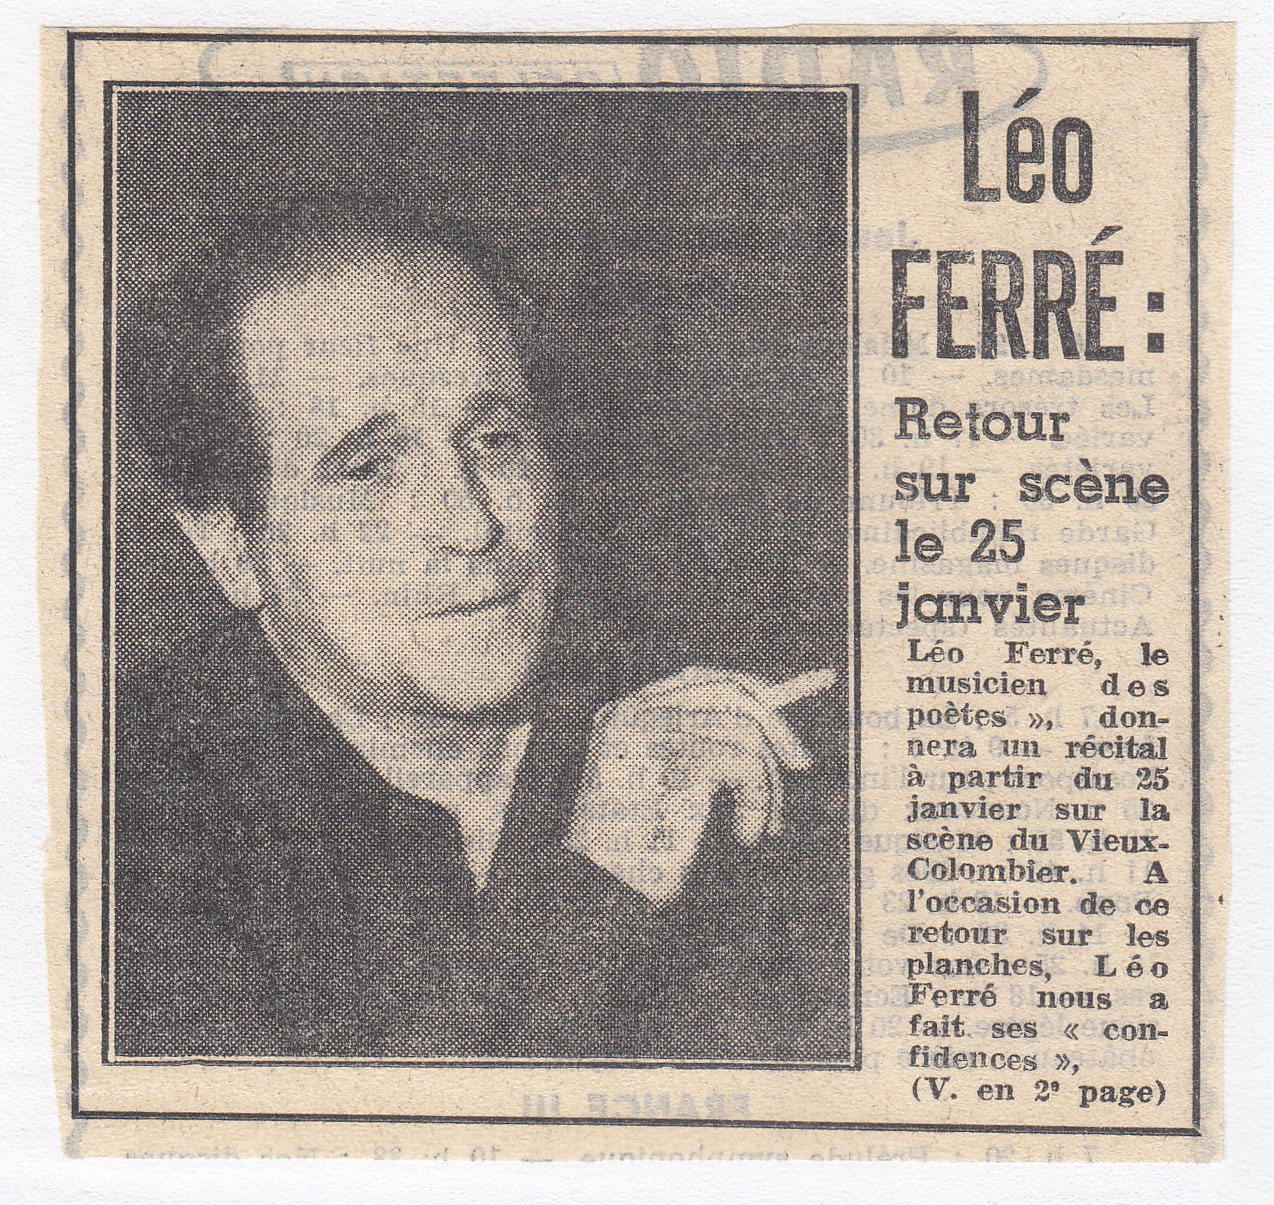 Léo Ferré, L'Humanité du 16/01/1961